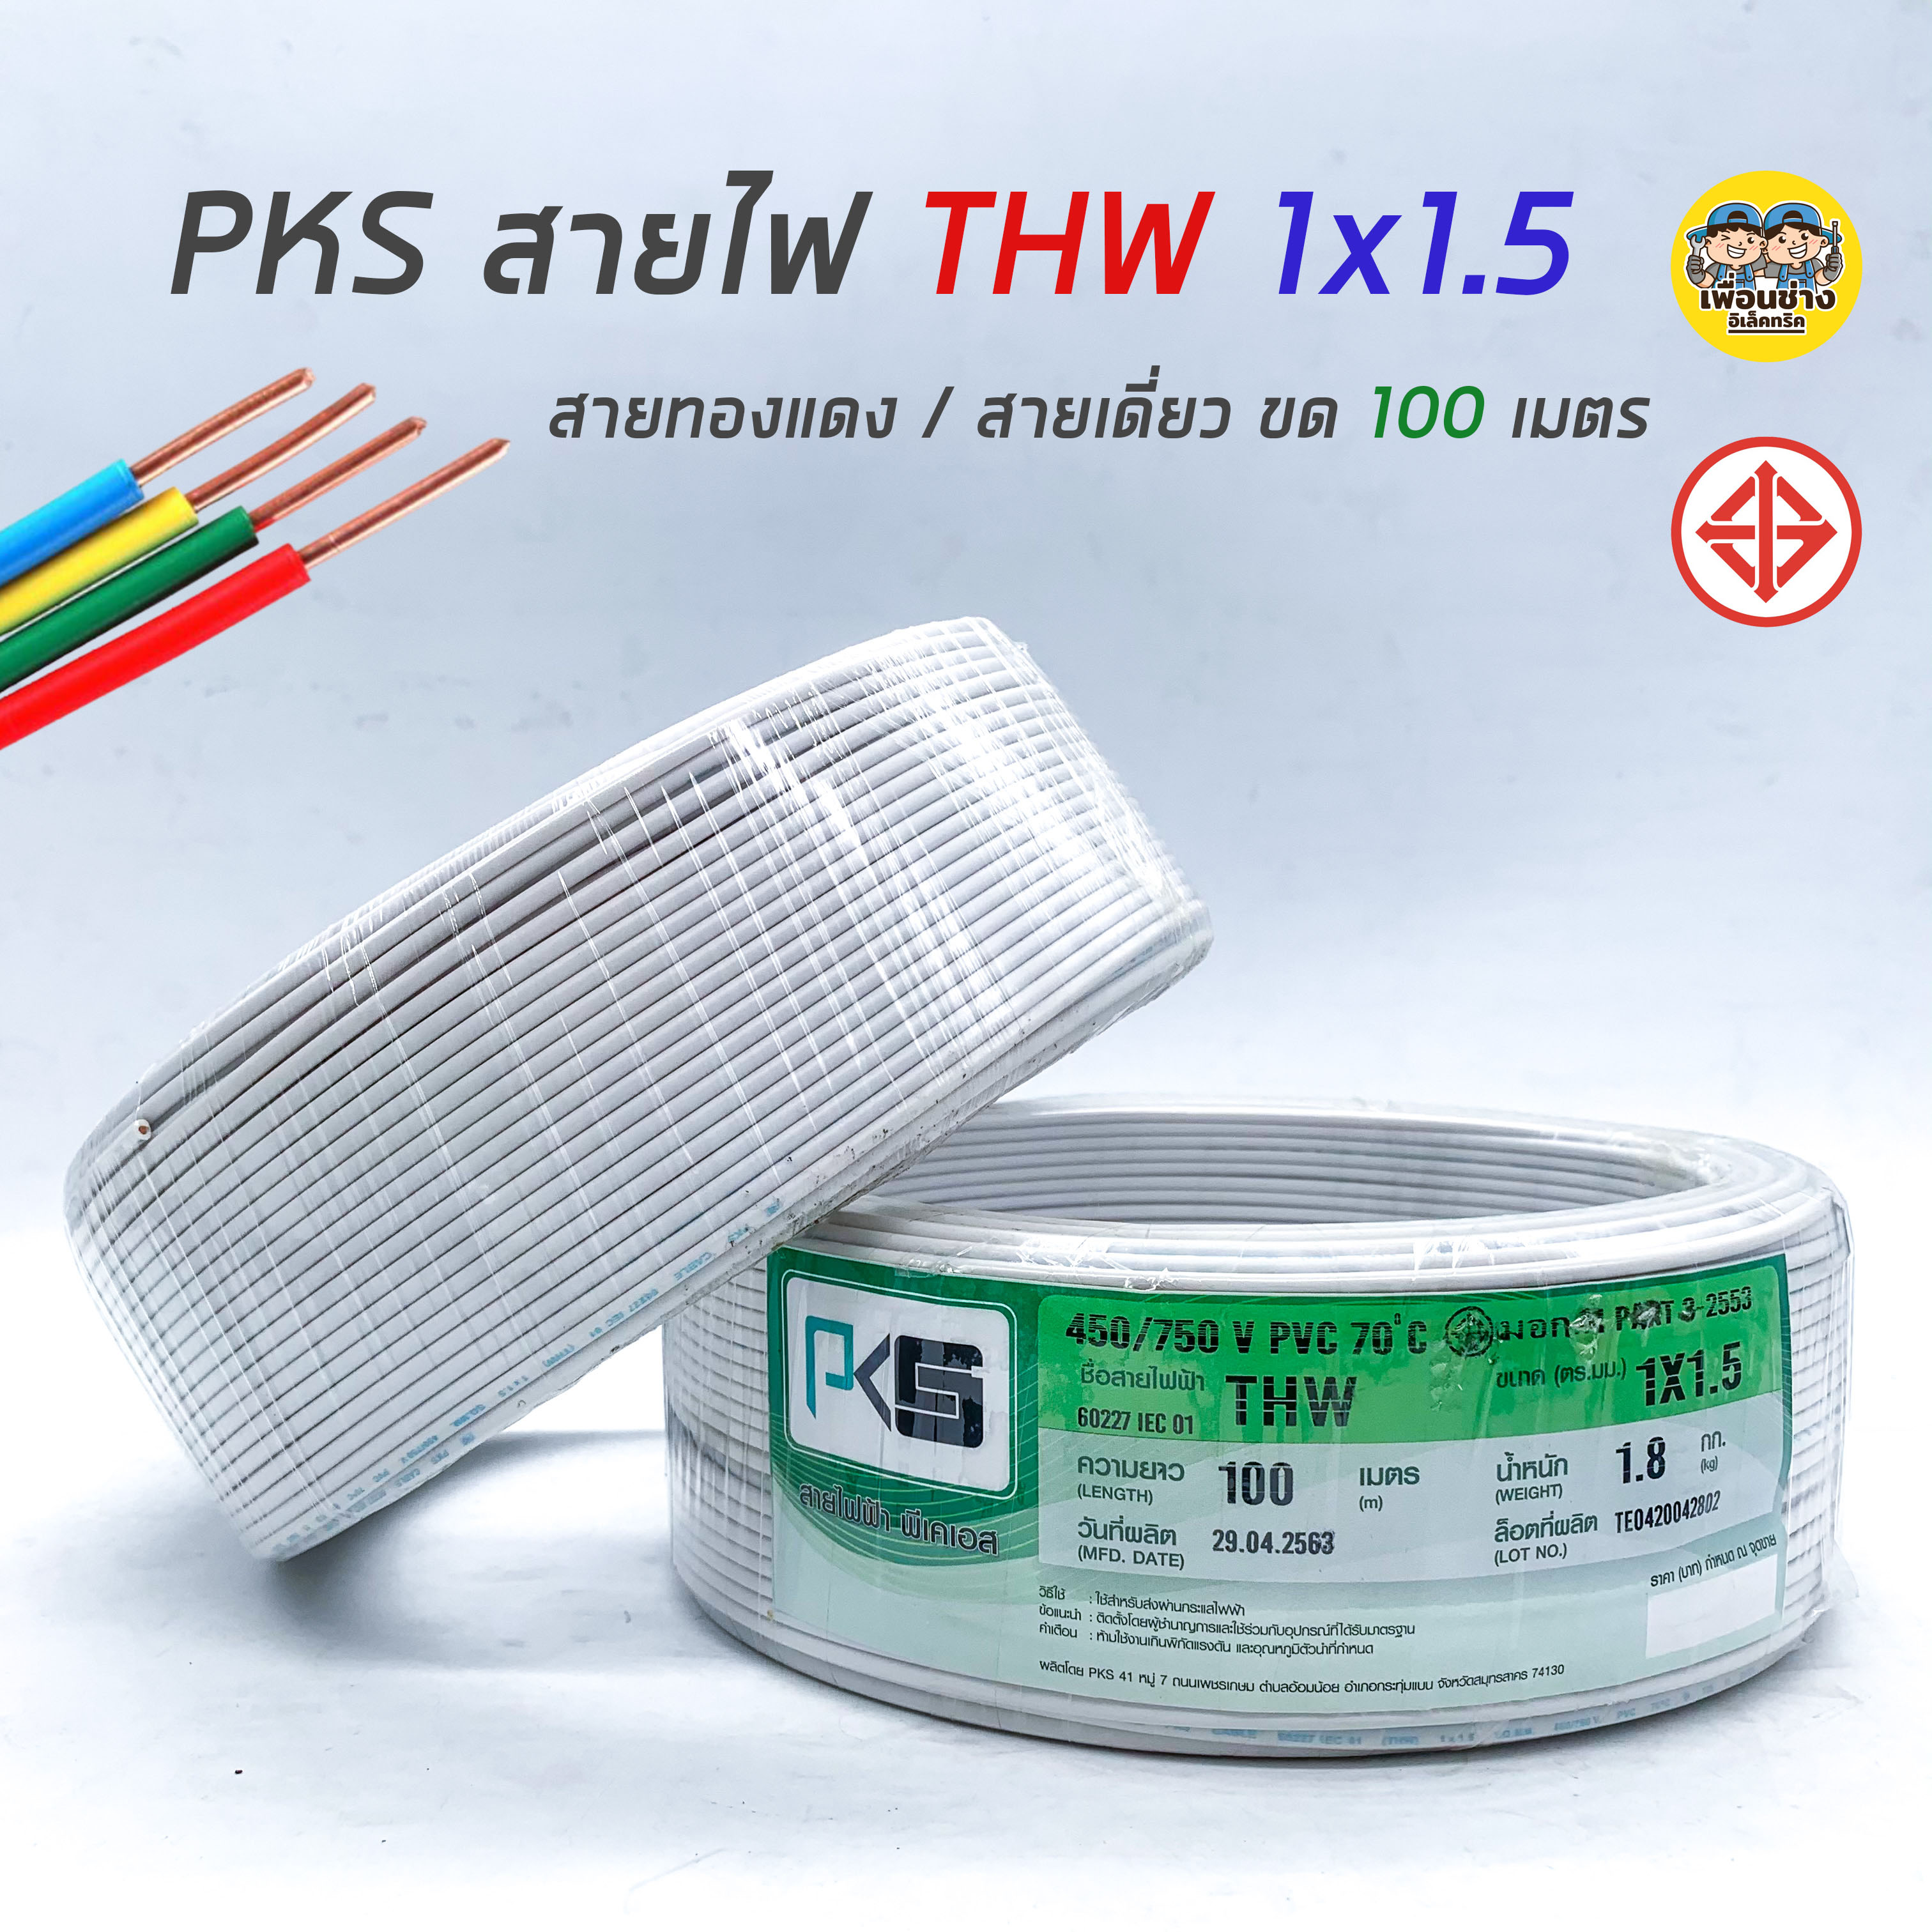 PKS สายไฟ THW 1x1.5 ขด 100 เมตร IEC01 สายเดี่ยว สายทองแดง สายแข็ง มีมอก. 1*1.5(เหลือง)